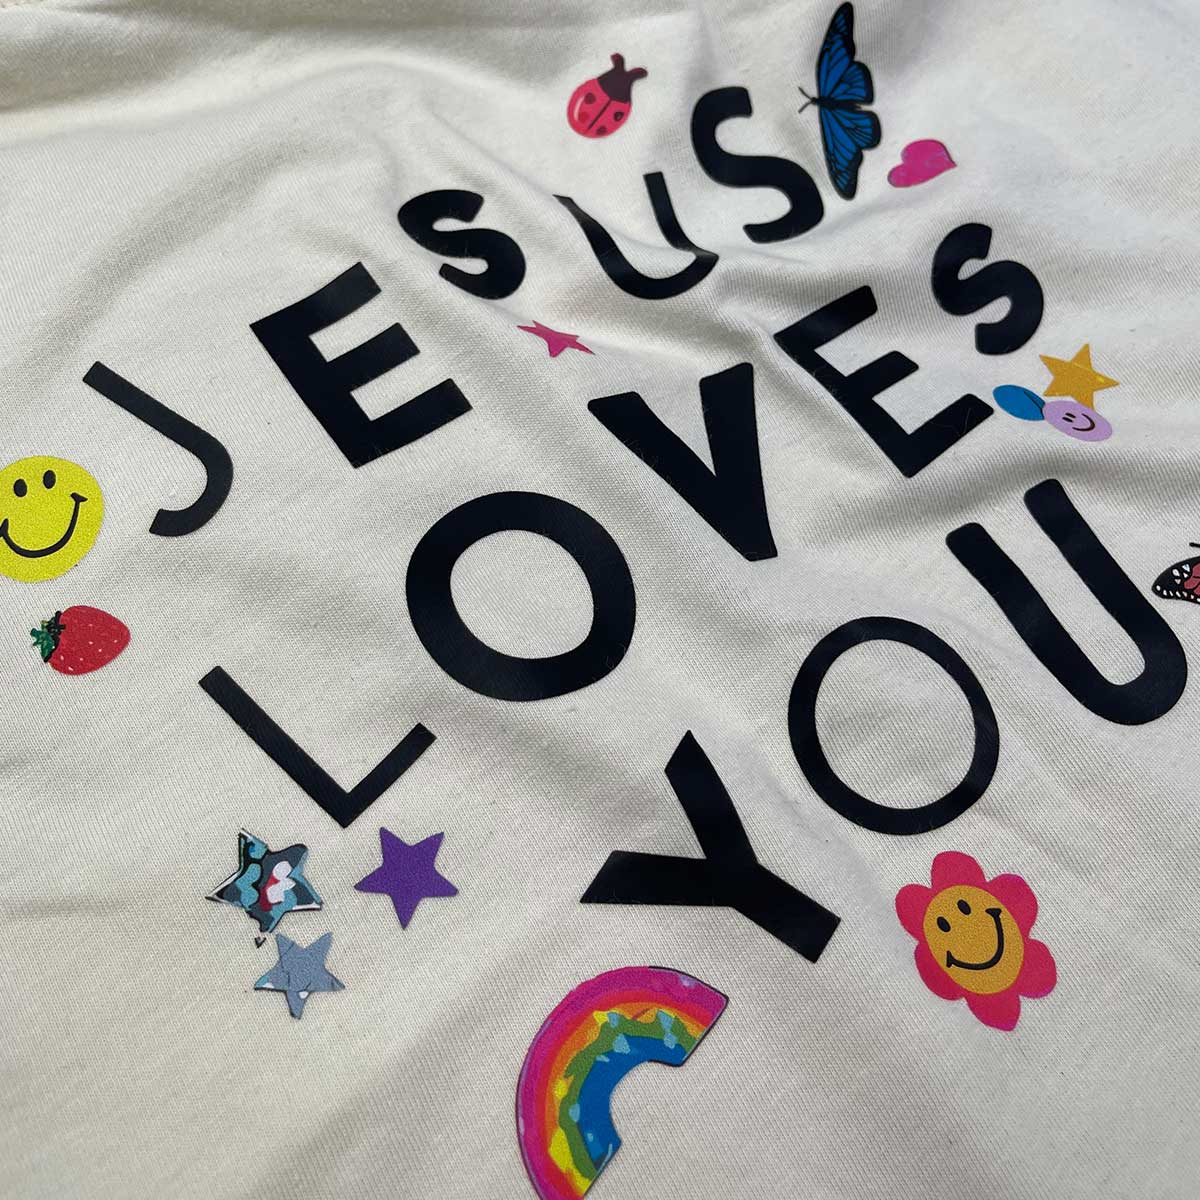 T-Shirt Infantil Off White Jesus Loves You